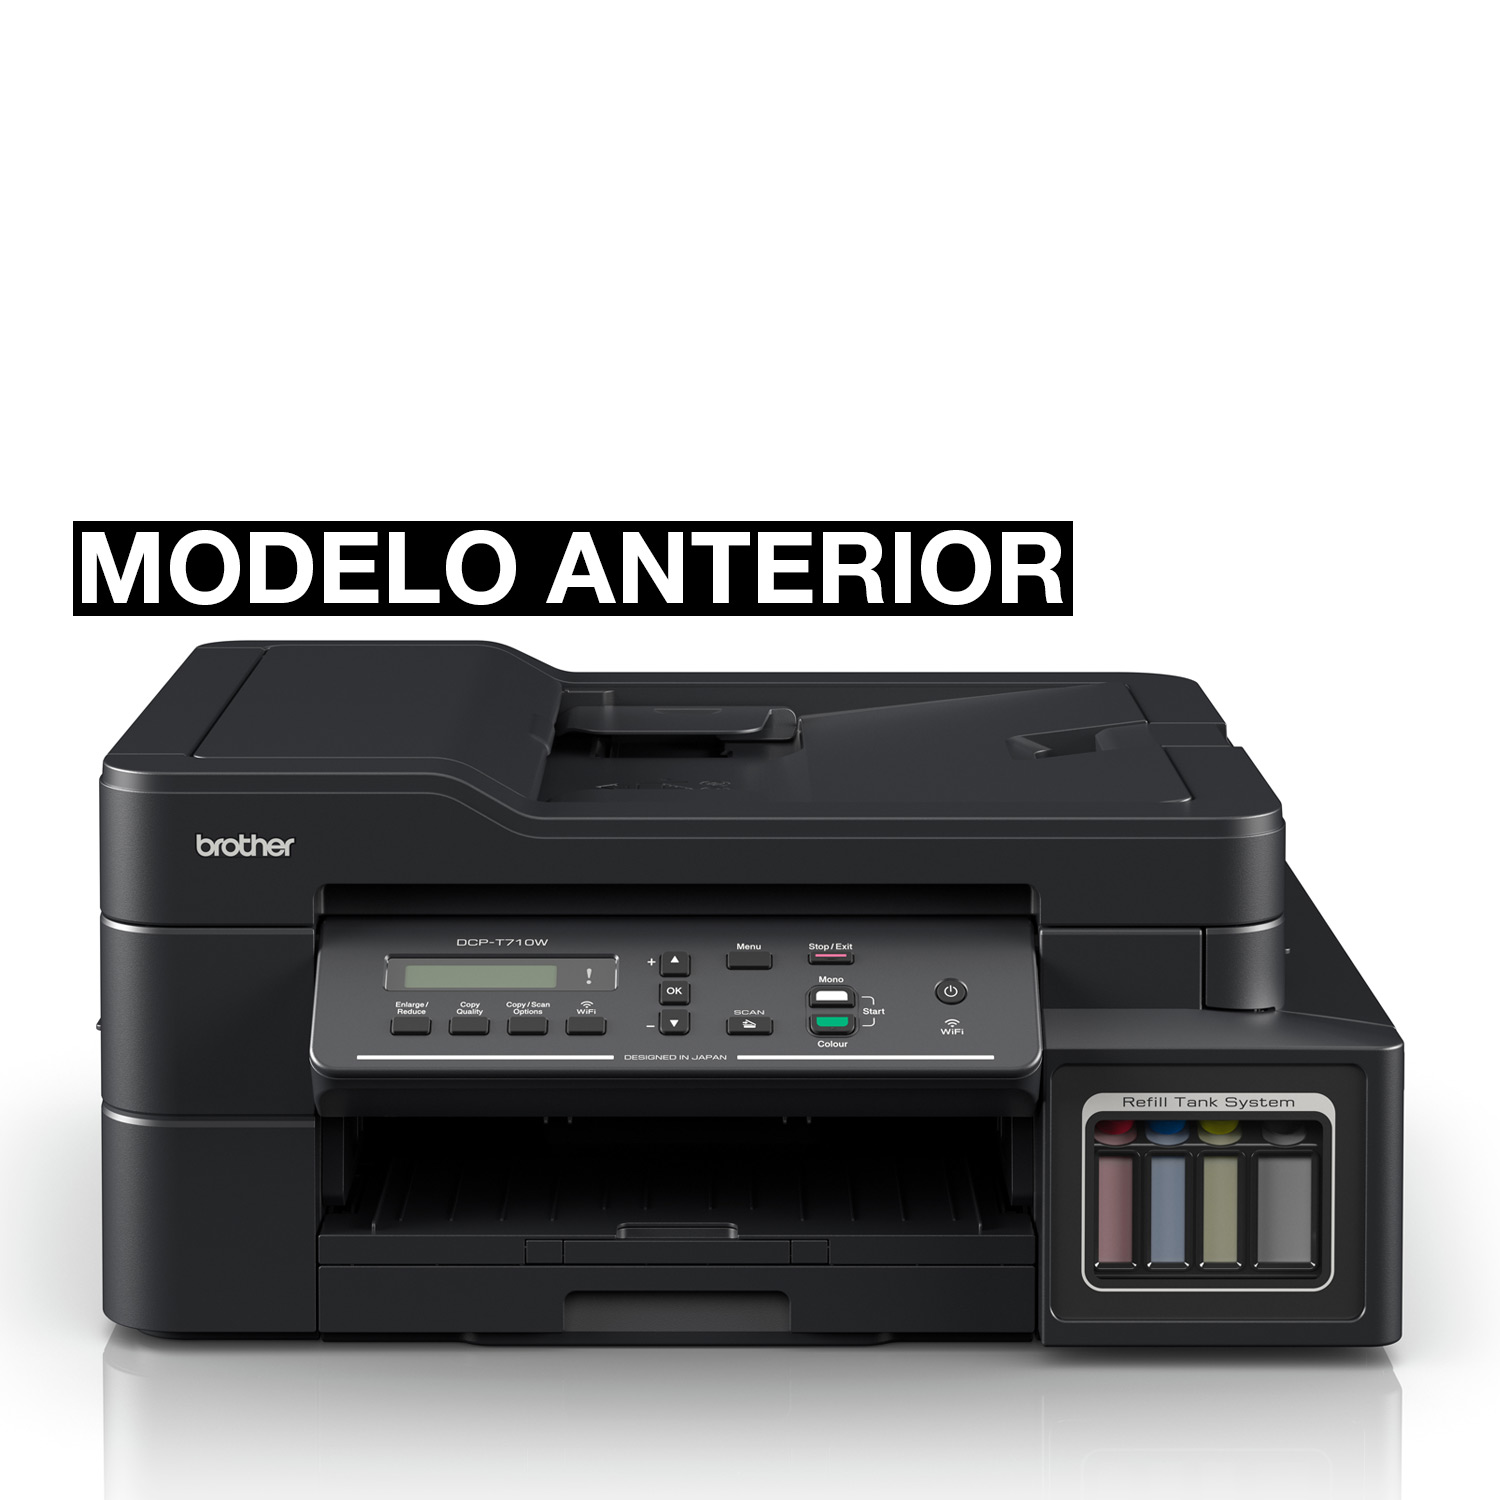 Impresora brother multifuncion dcp-t510w c/ sistema continuo y